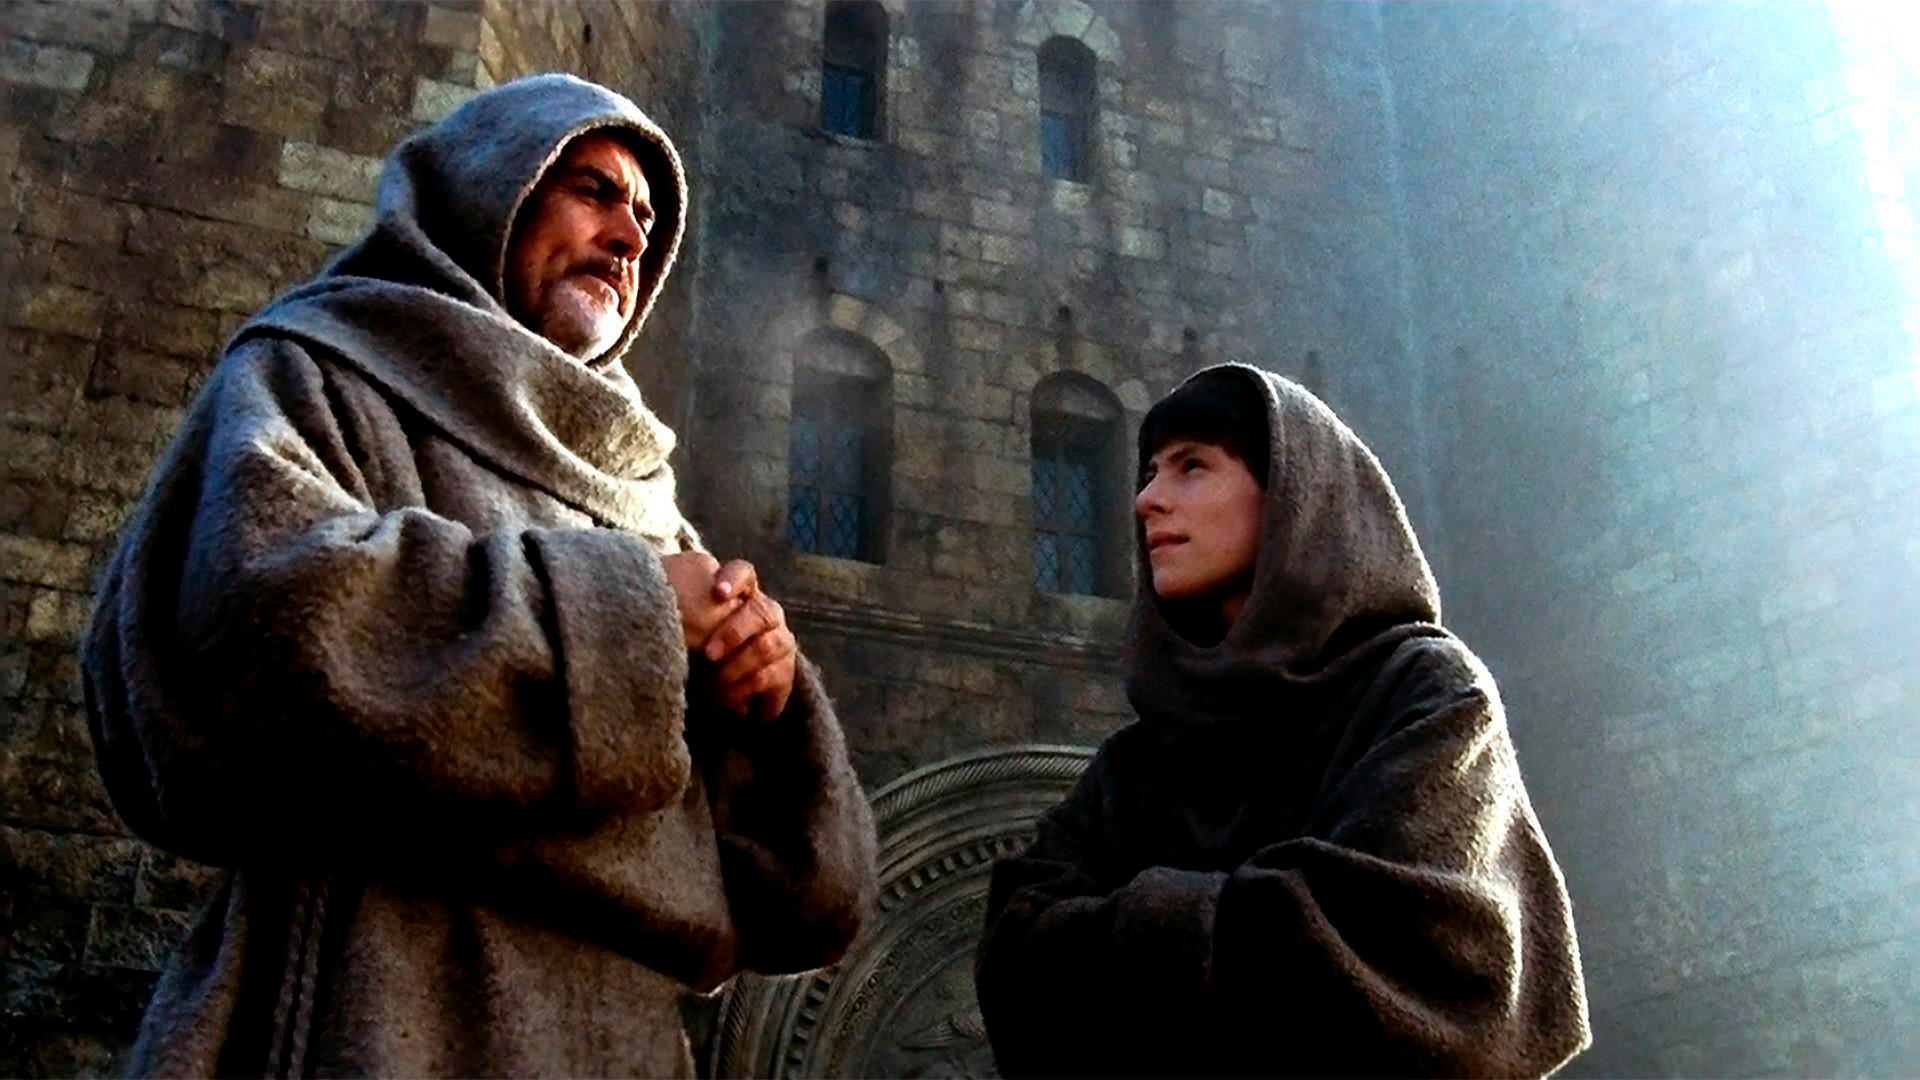 Fotograma de "El nombre de la rosa" (1986), película de Jean-Jacques Annaud basada en la novela de Umberto Eco